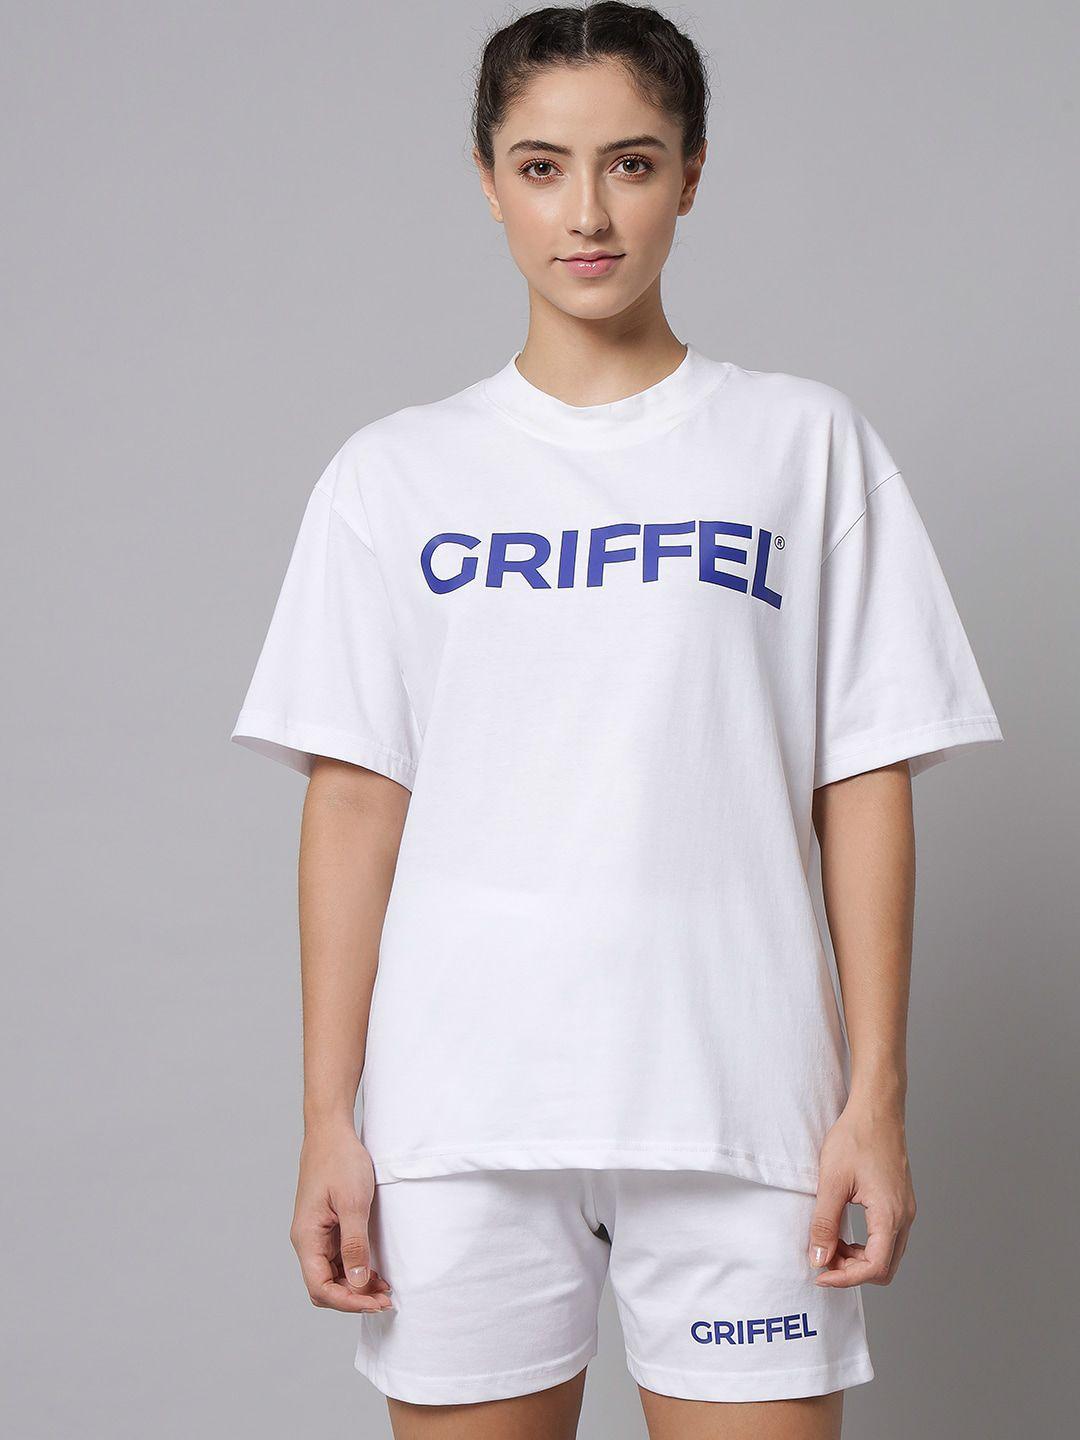 griffel women white clothing set